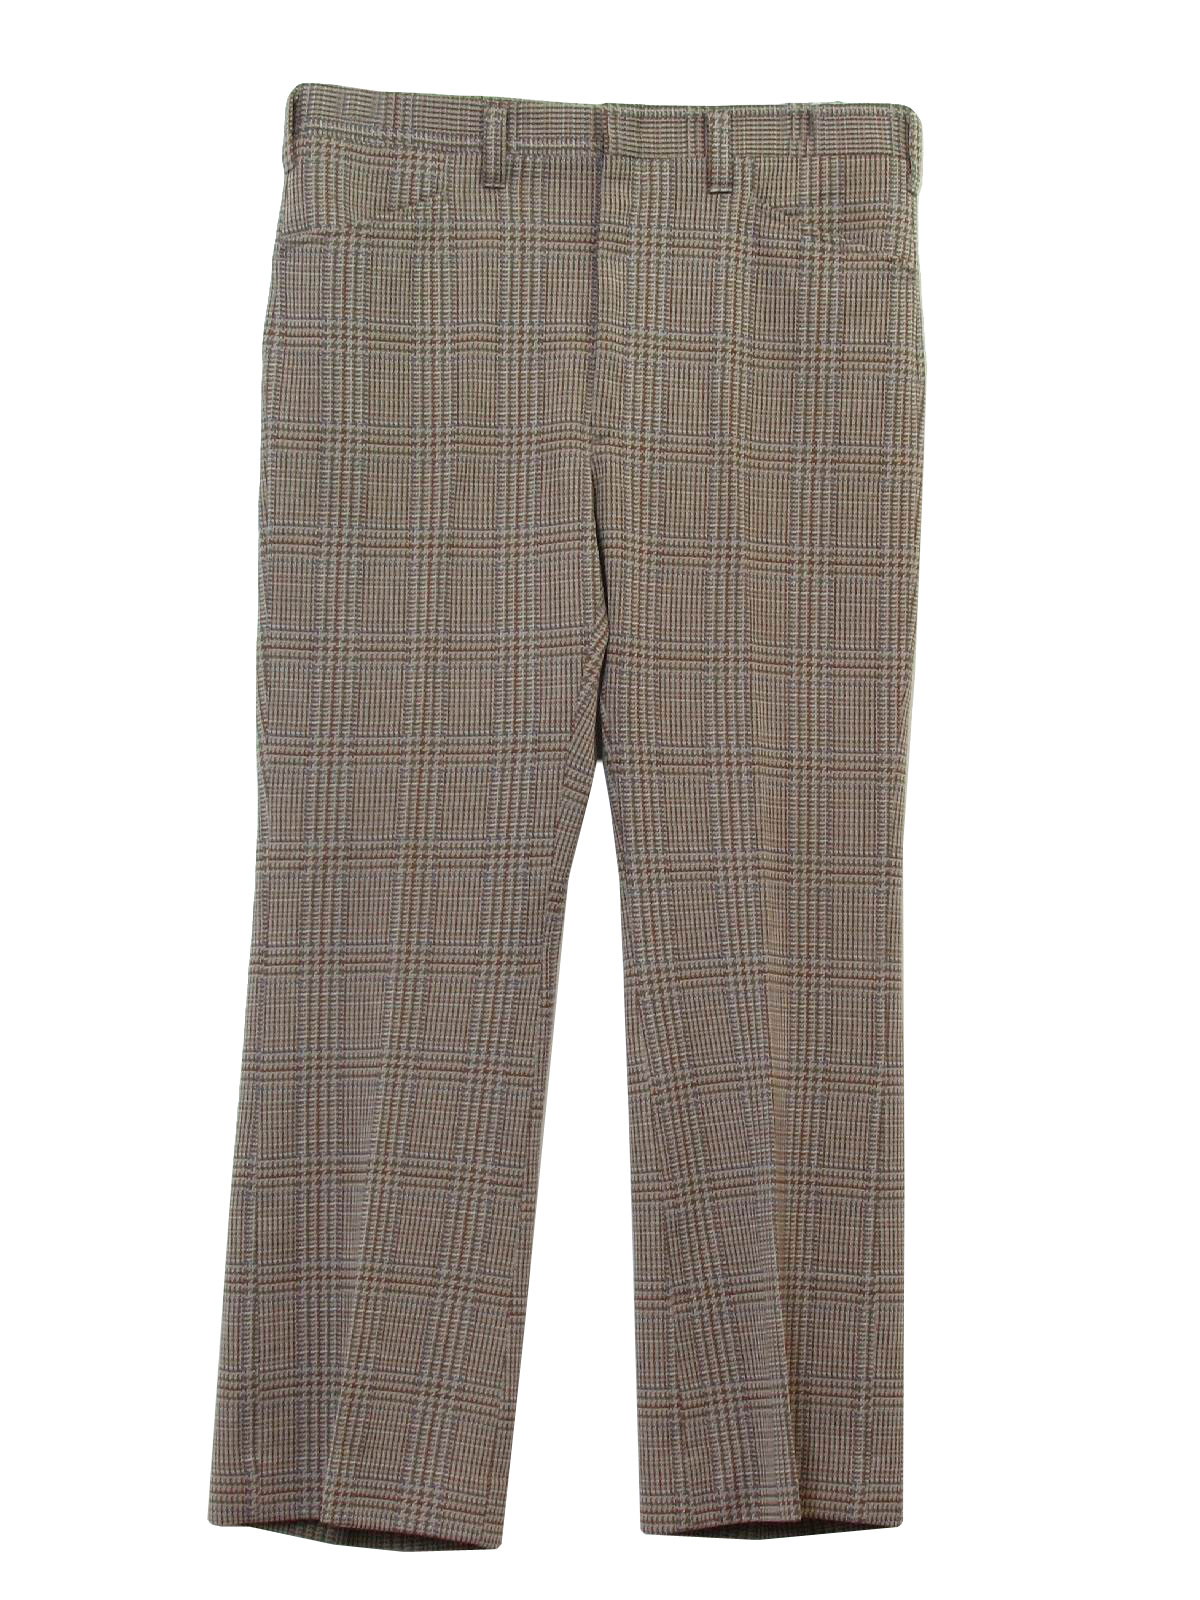 70s Retro Flared Pants / Flares: 70s -Hagar- Mens shaded brown, tan ...